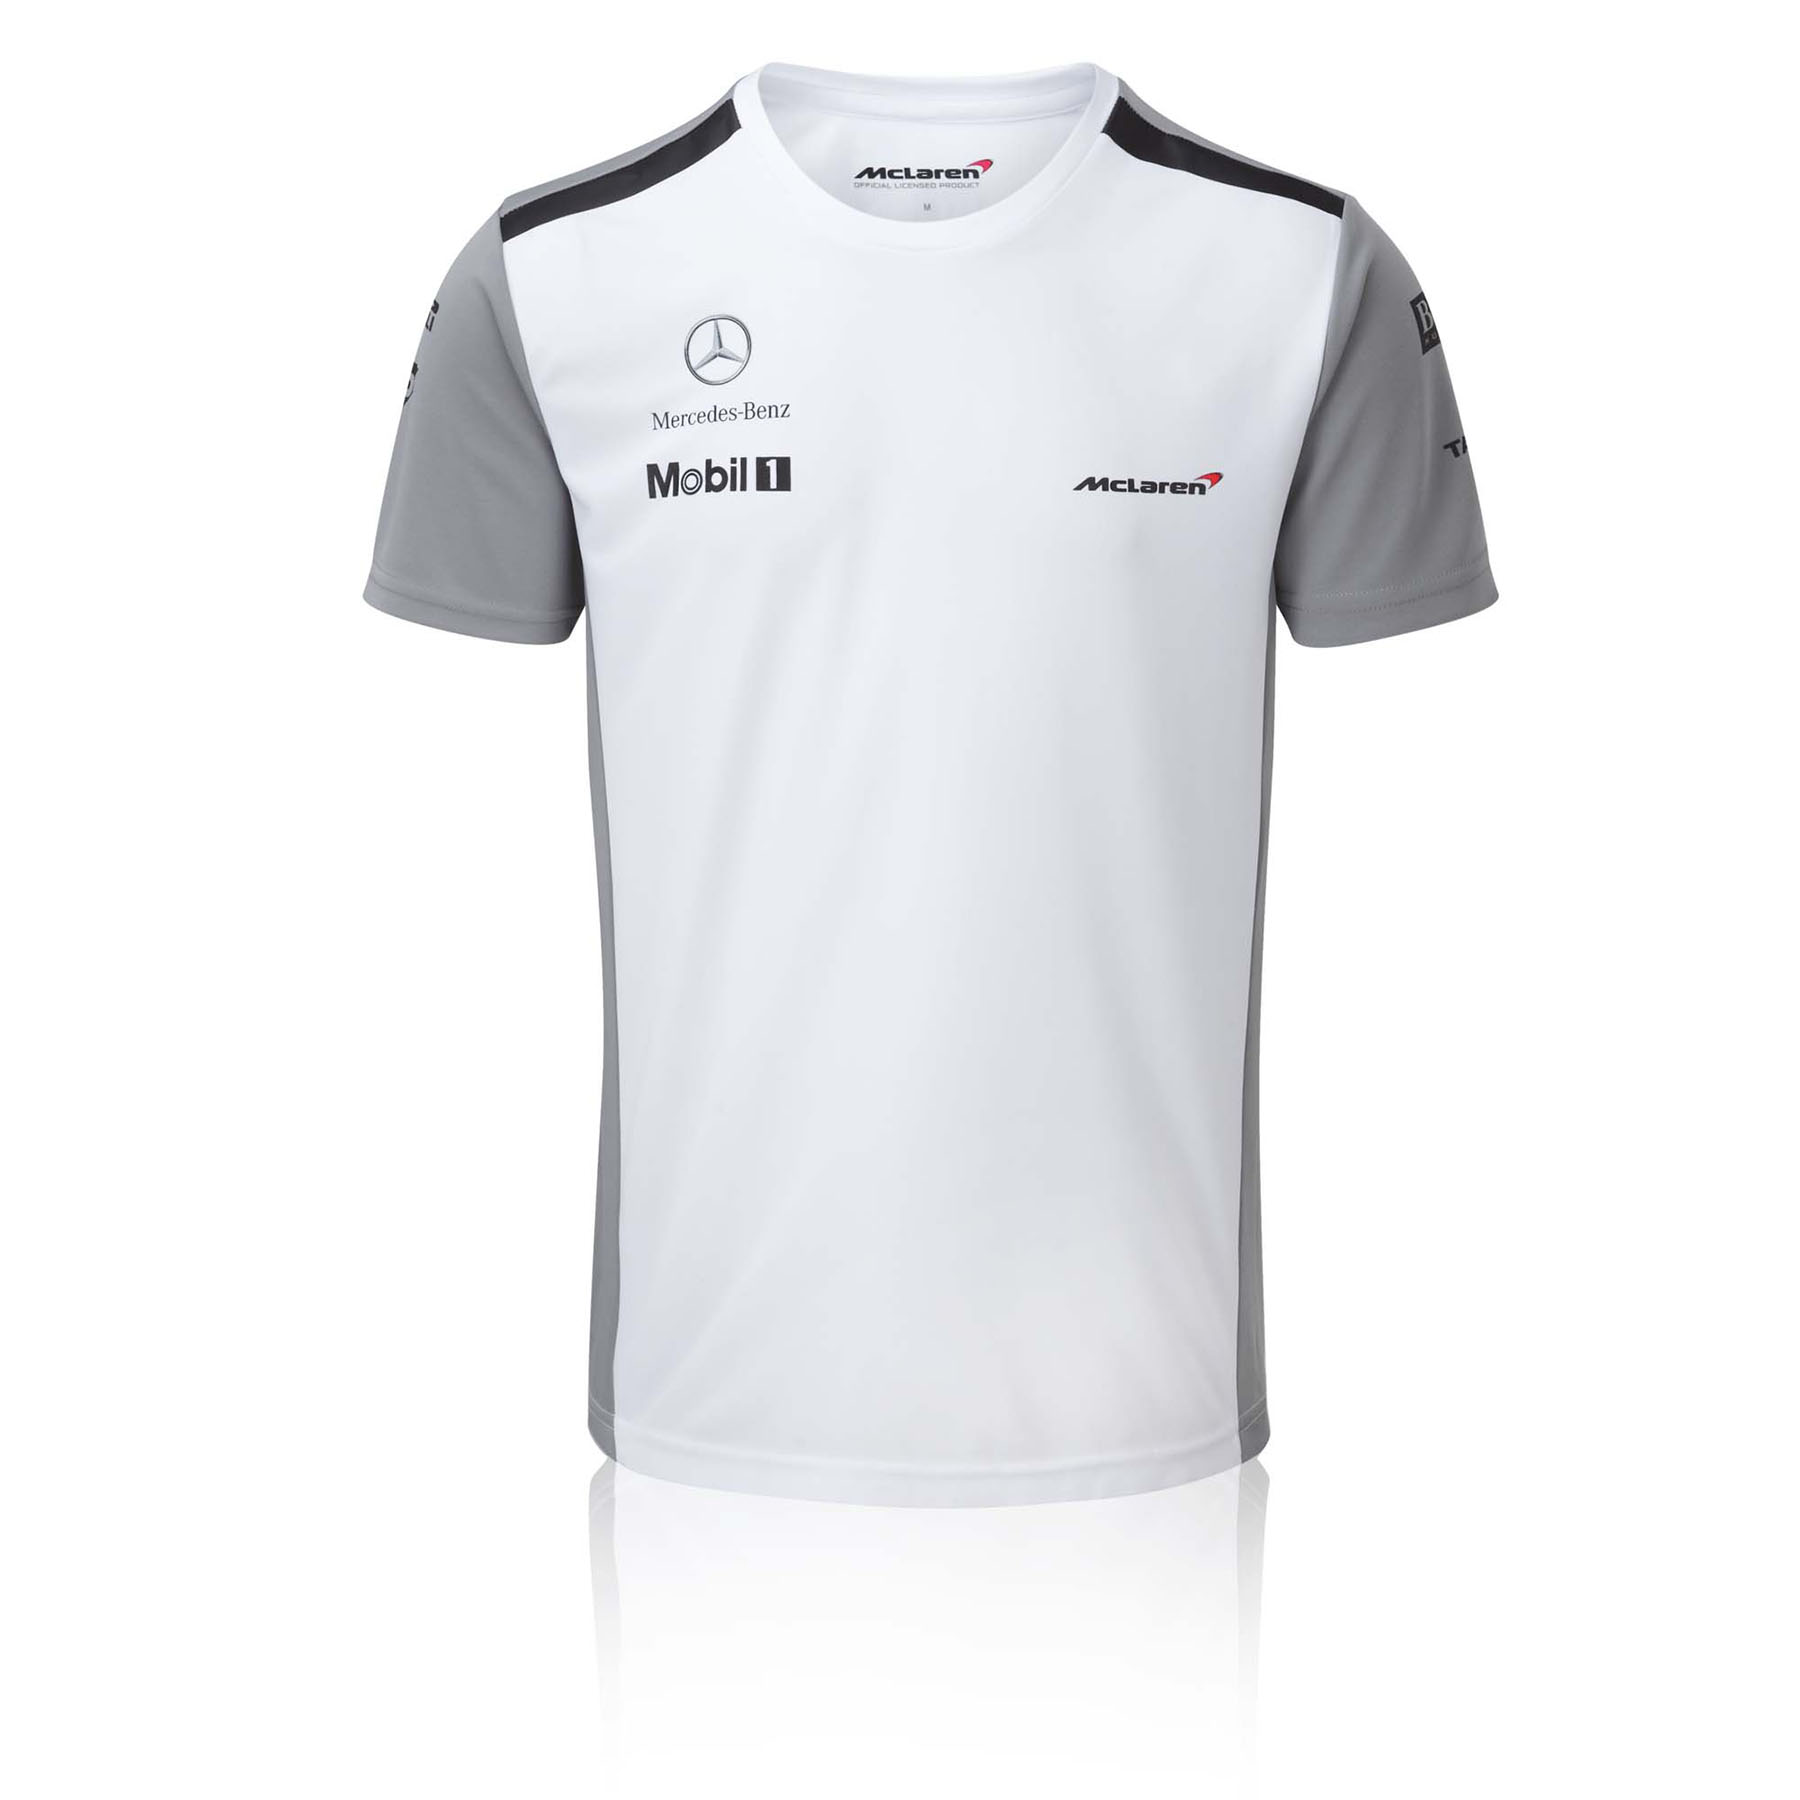 Gifts for Men|Formula 1 McLaren Mercedes 2014 Technical Team T-Shirt